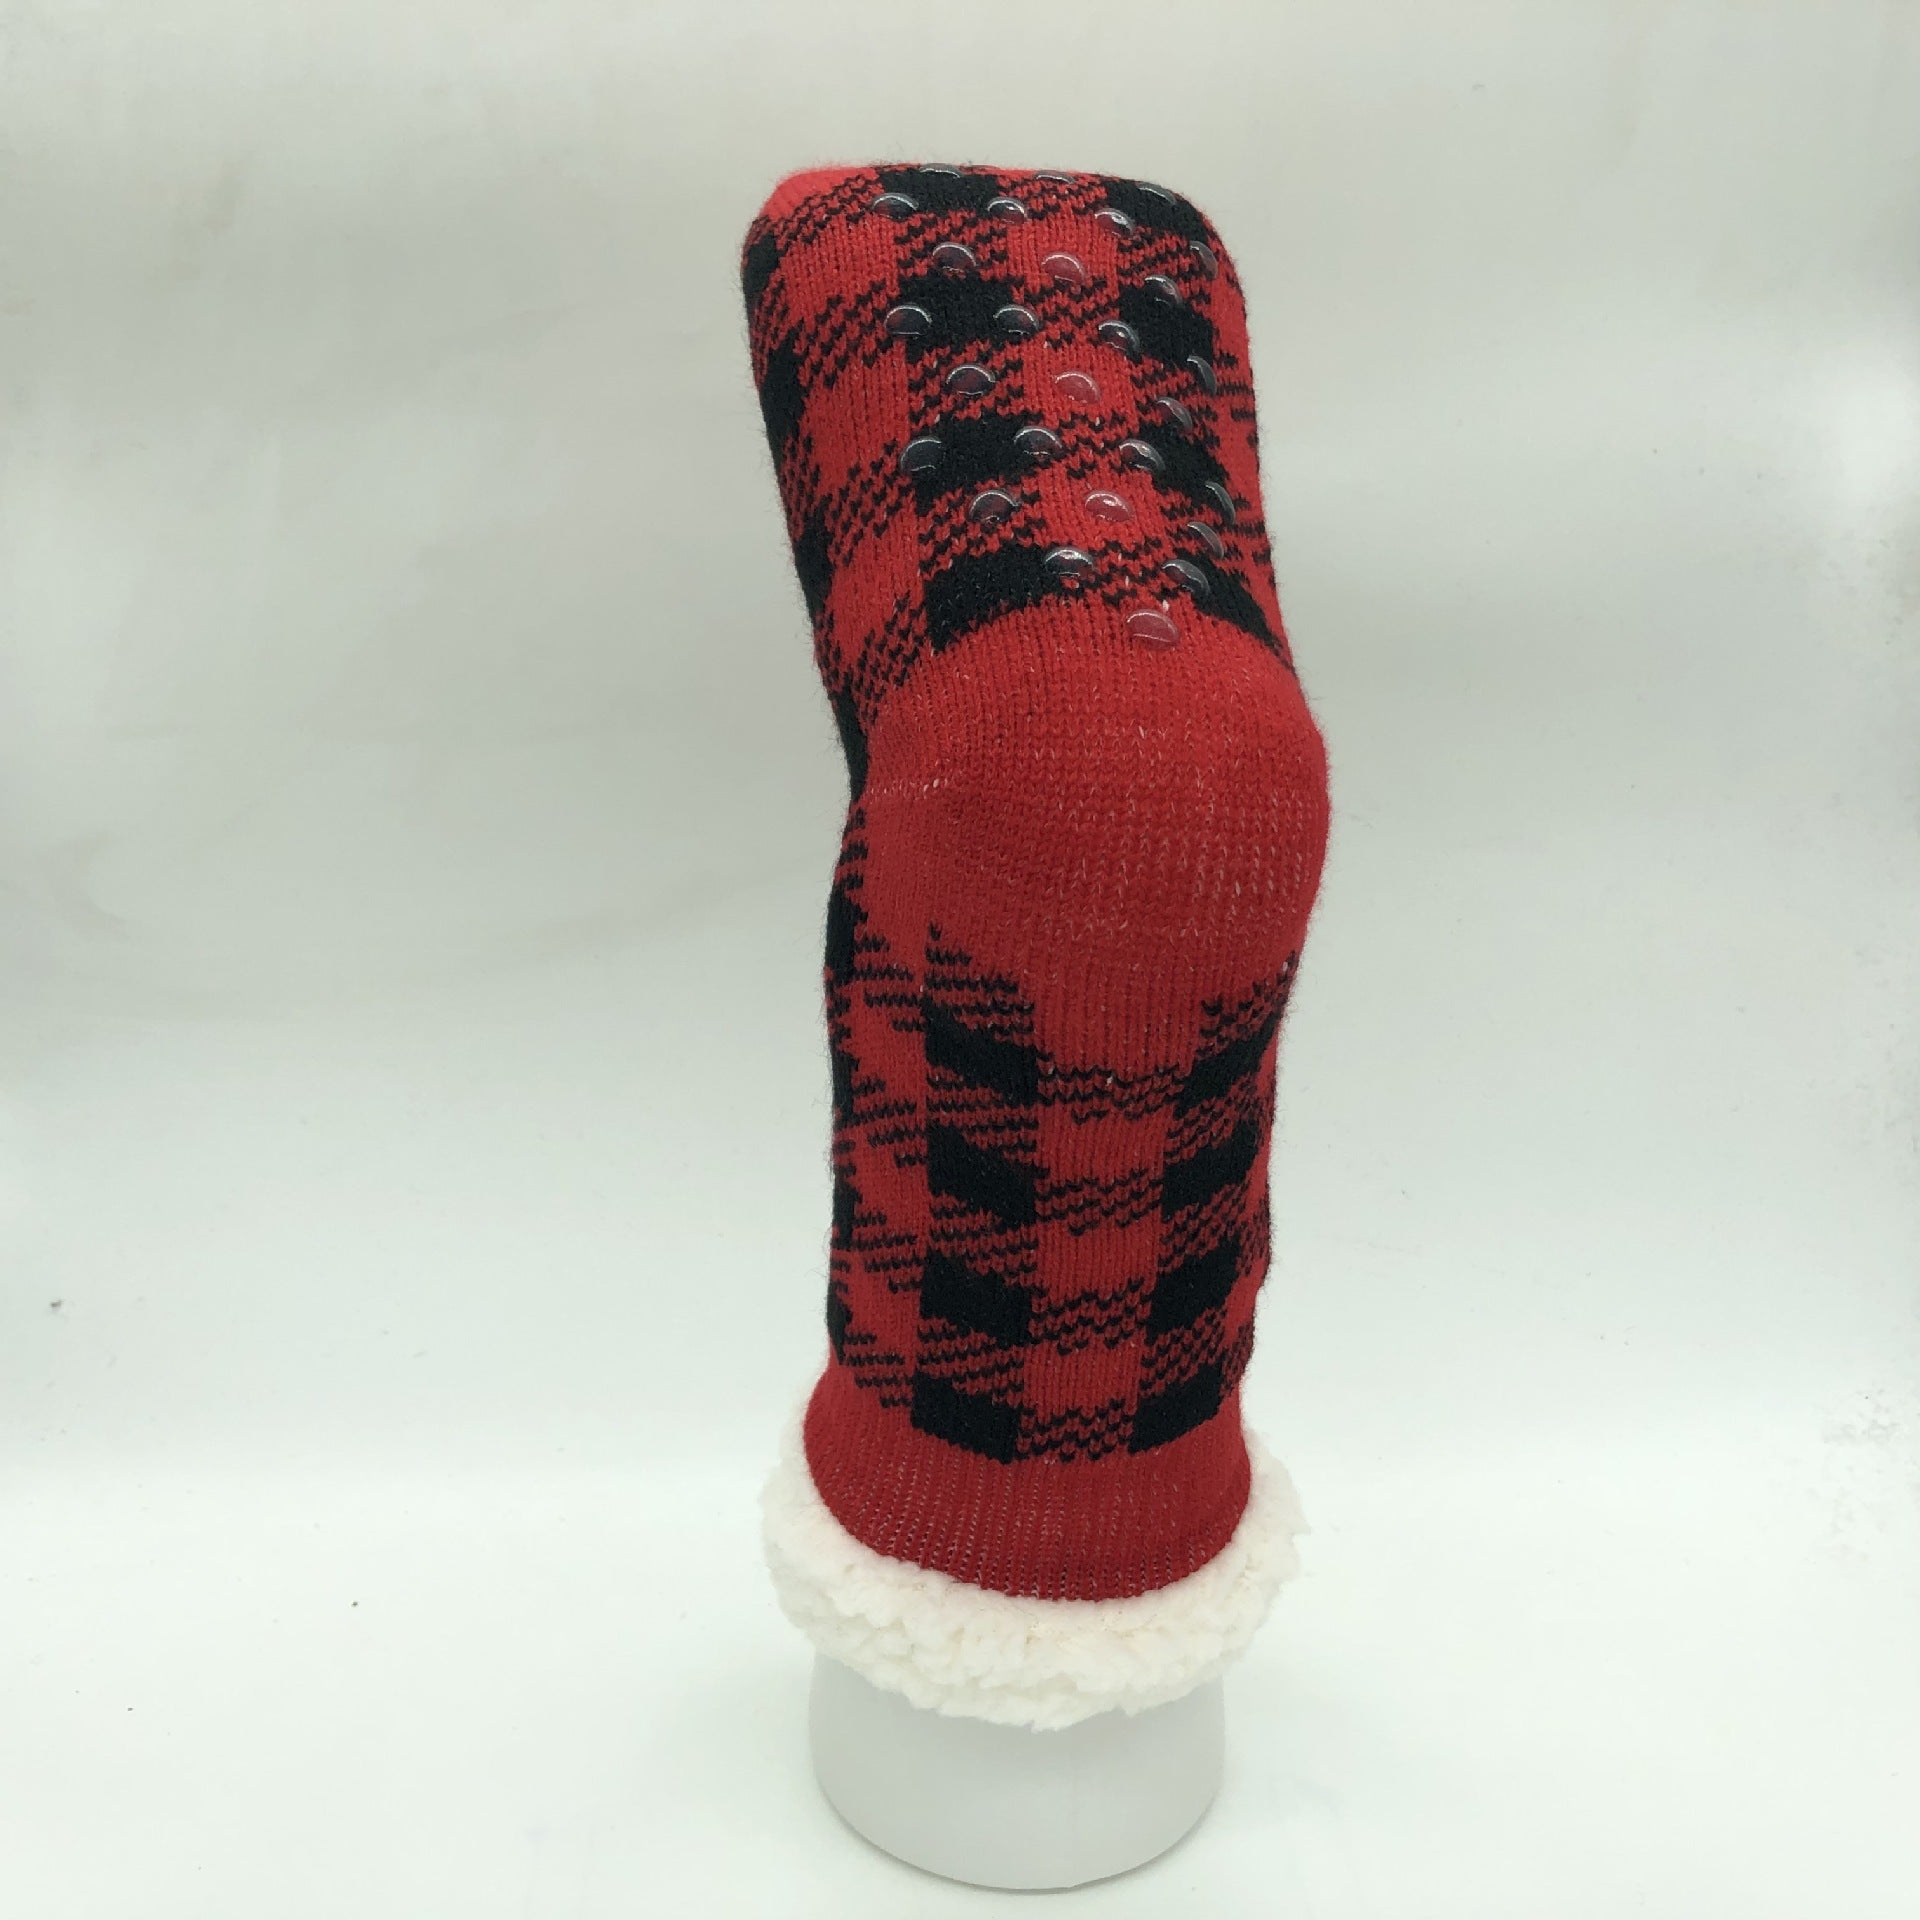 Plaid Thick Striped Sherpa Slipper Socks Leg Warmers For Cozy Home Sleep, Non-Slip Floor Socks For Autumn/Winter Women